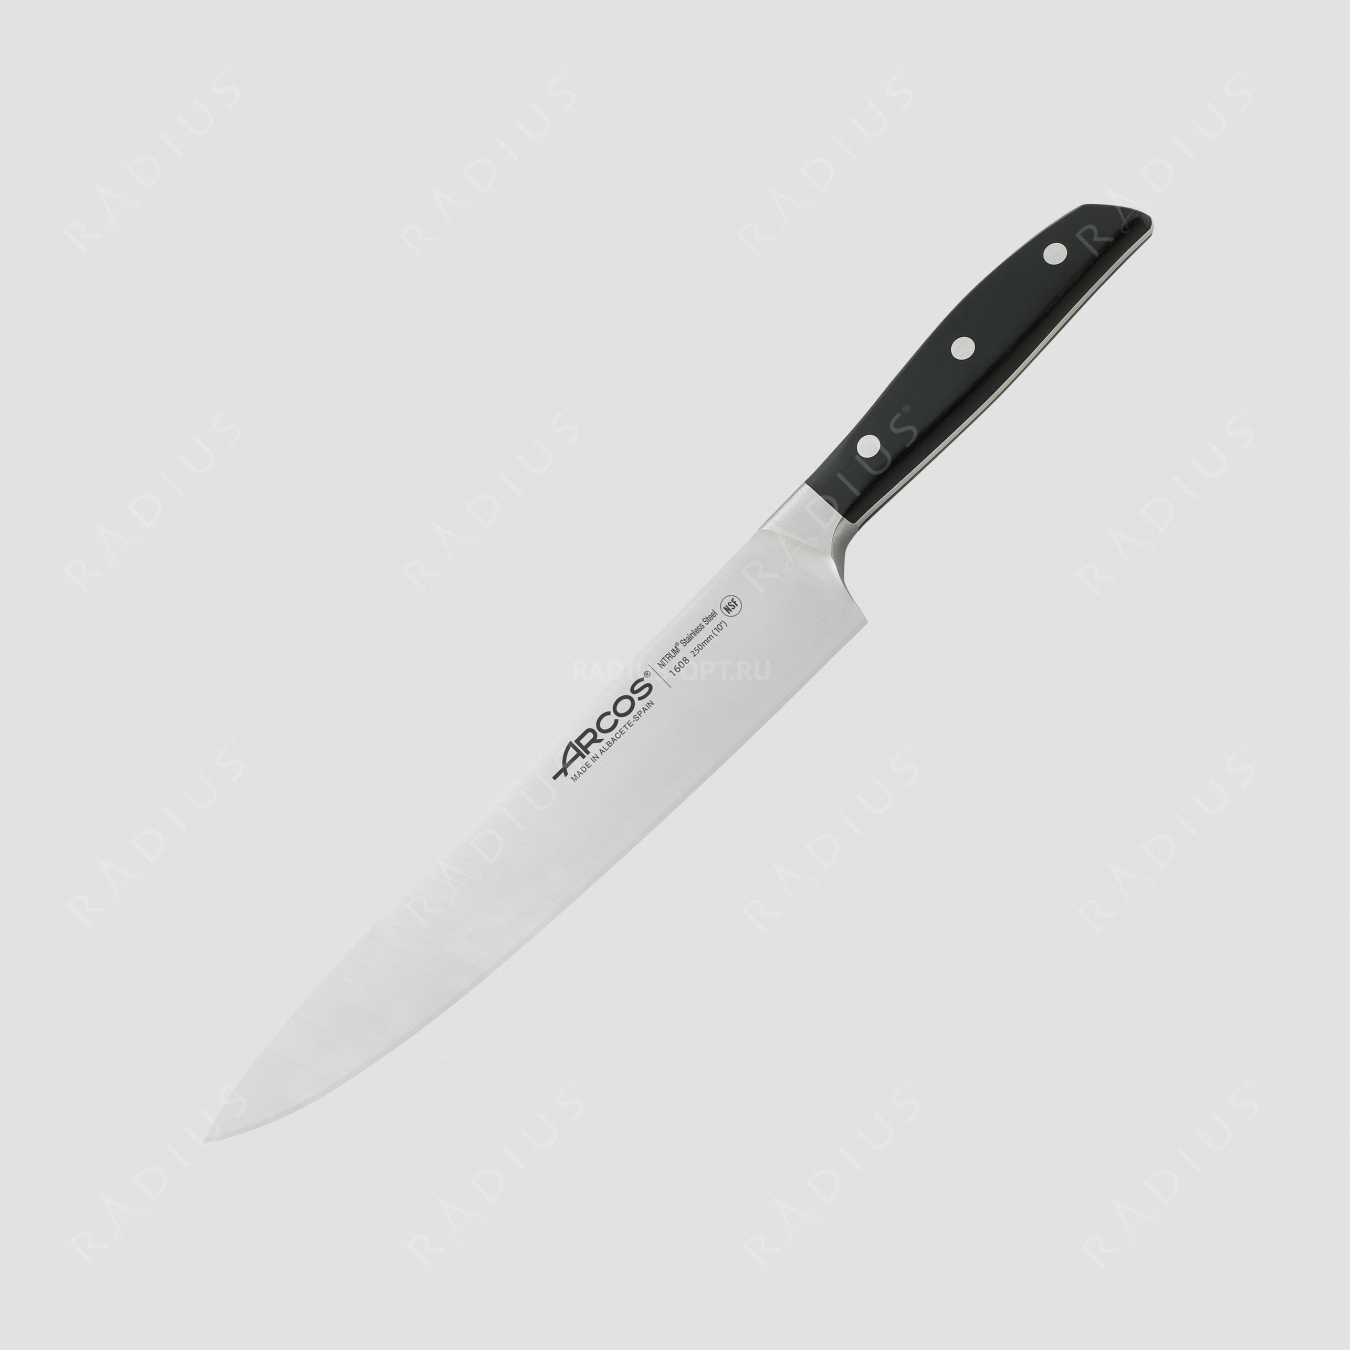 Профессиональный поварской кухонный нож 25 см, серия Manhattan, ARCOS, Испания